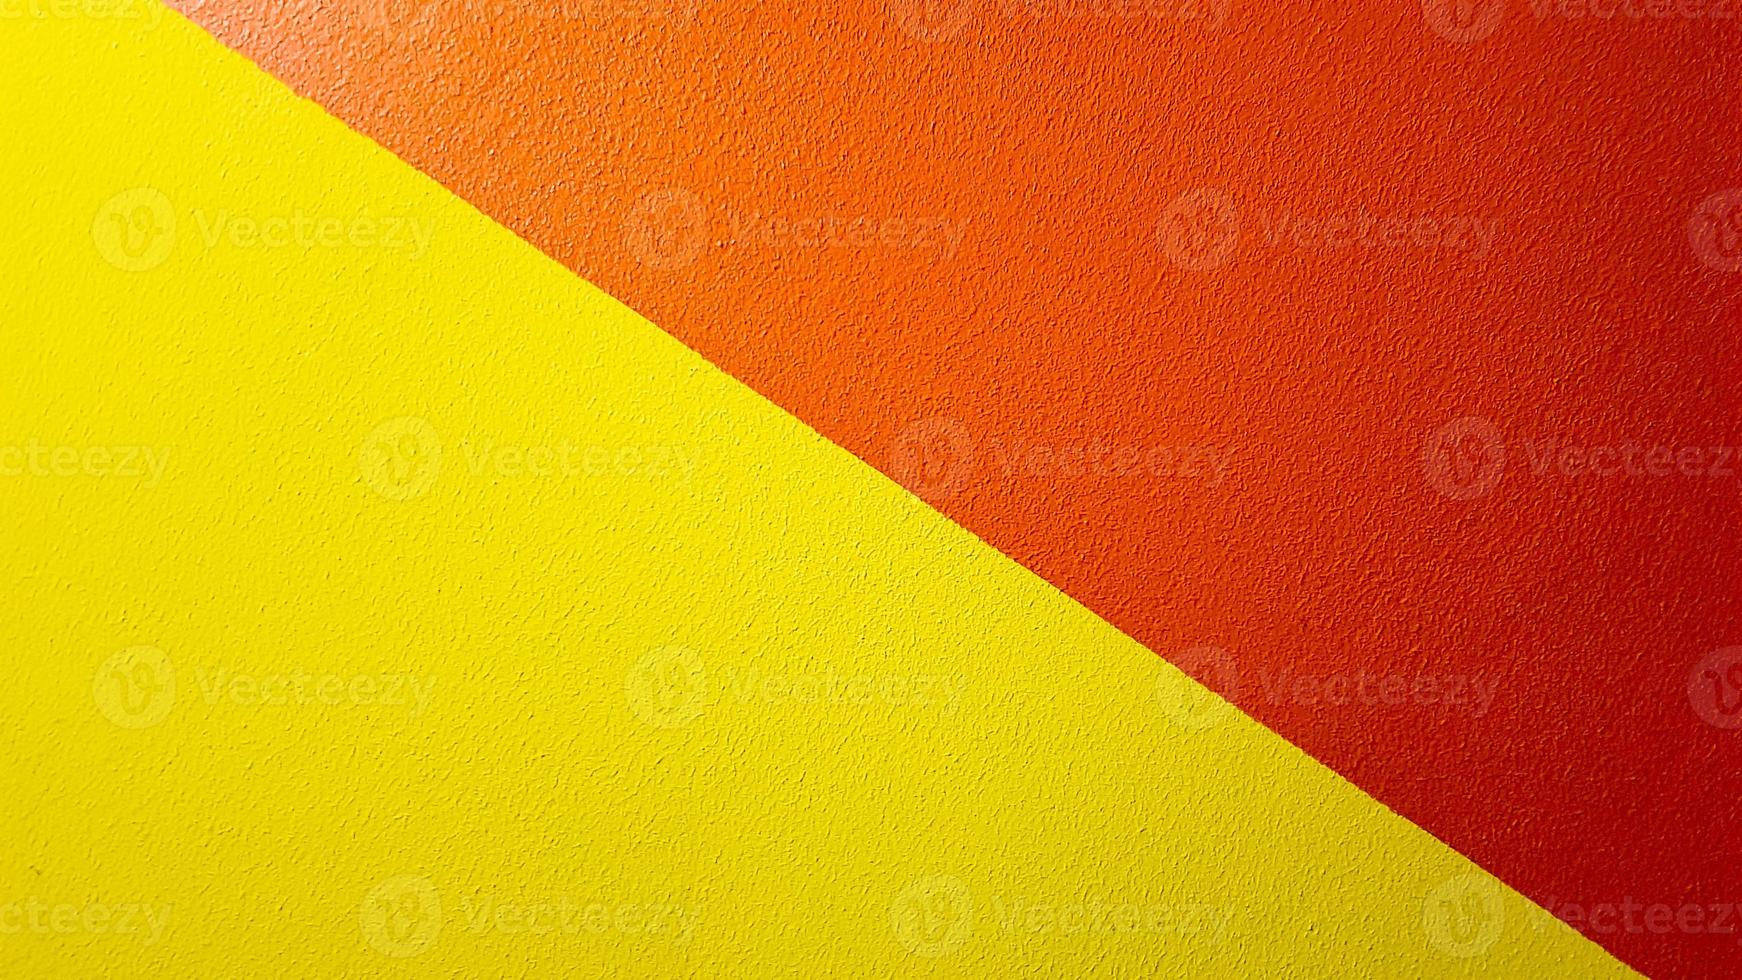 röd och gul målad vägg textur abstrakt grunge bakgrund med kopia utrymme. abstrakt geometriskt mönster på väggen. väggen är uppdelad i bårder i olika färger foto